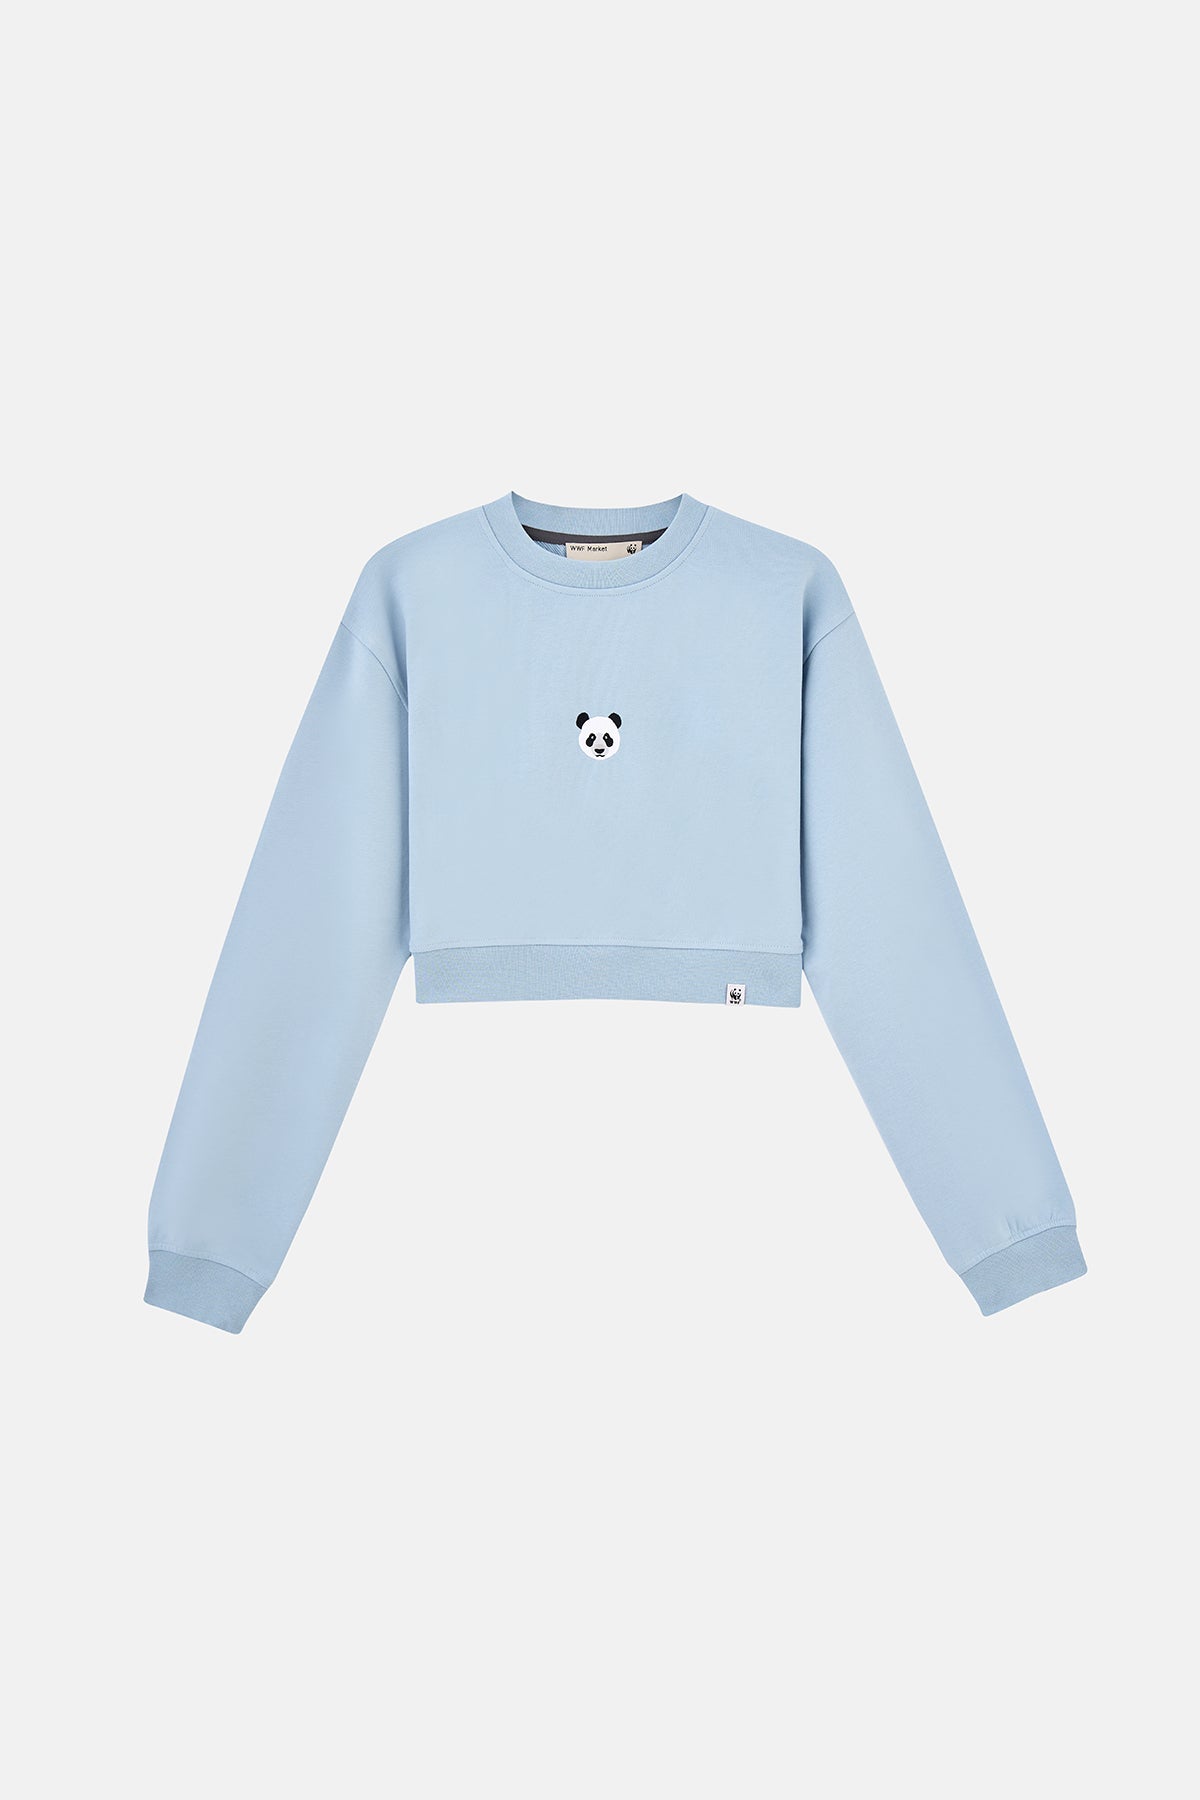 Panda Soft Fleece Crop Sweatshirt - Açık Mavi